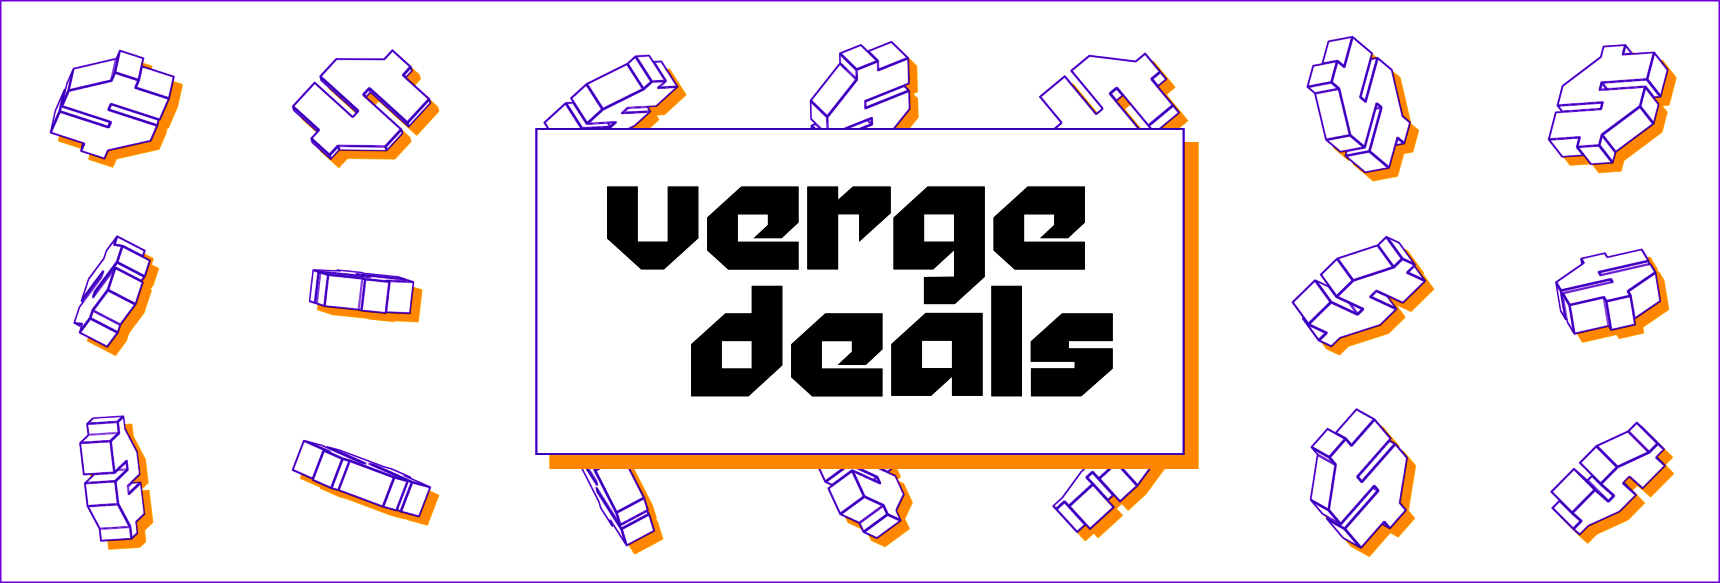 Verge Deals logo